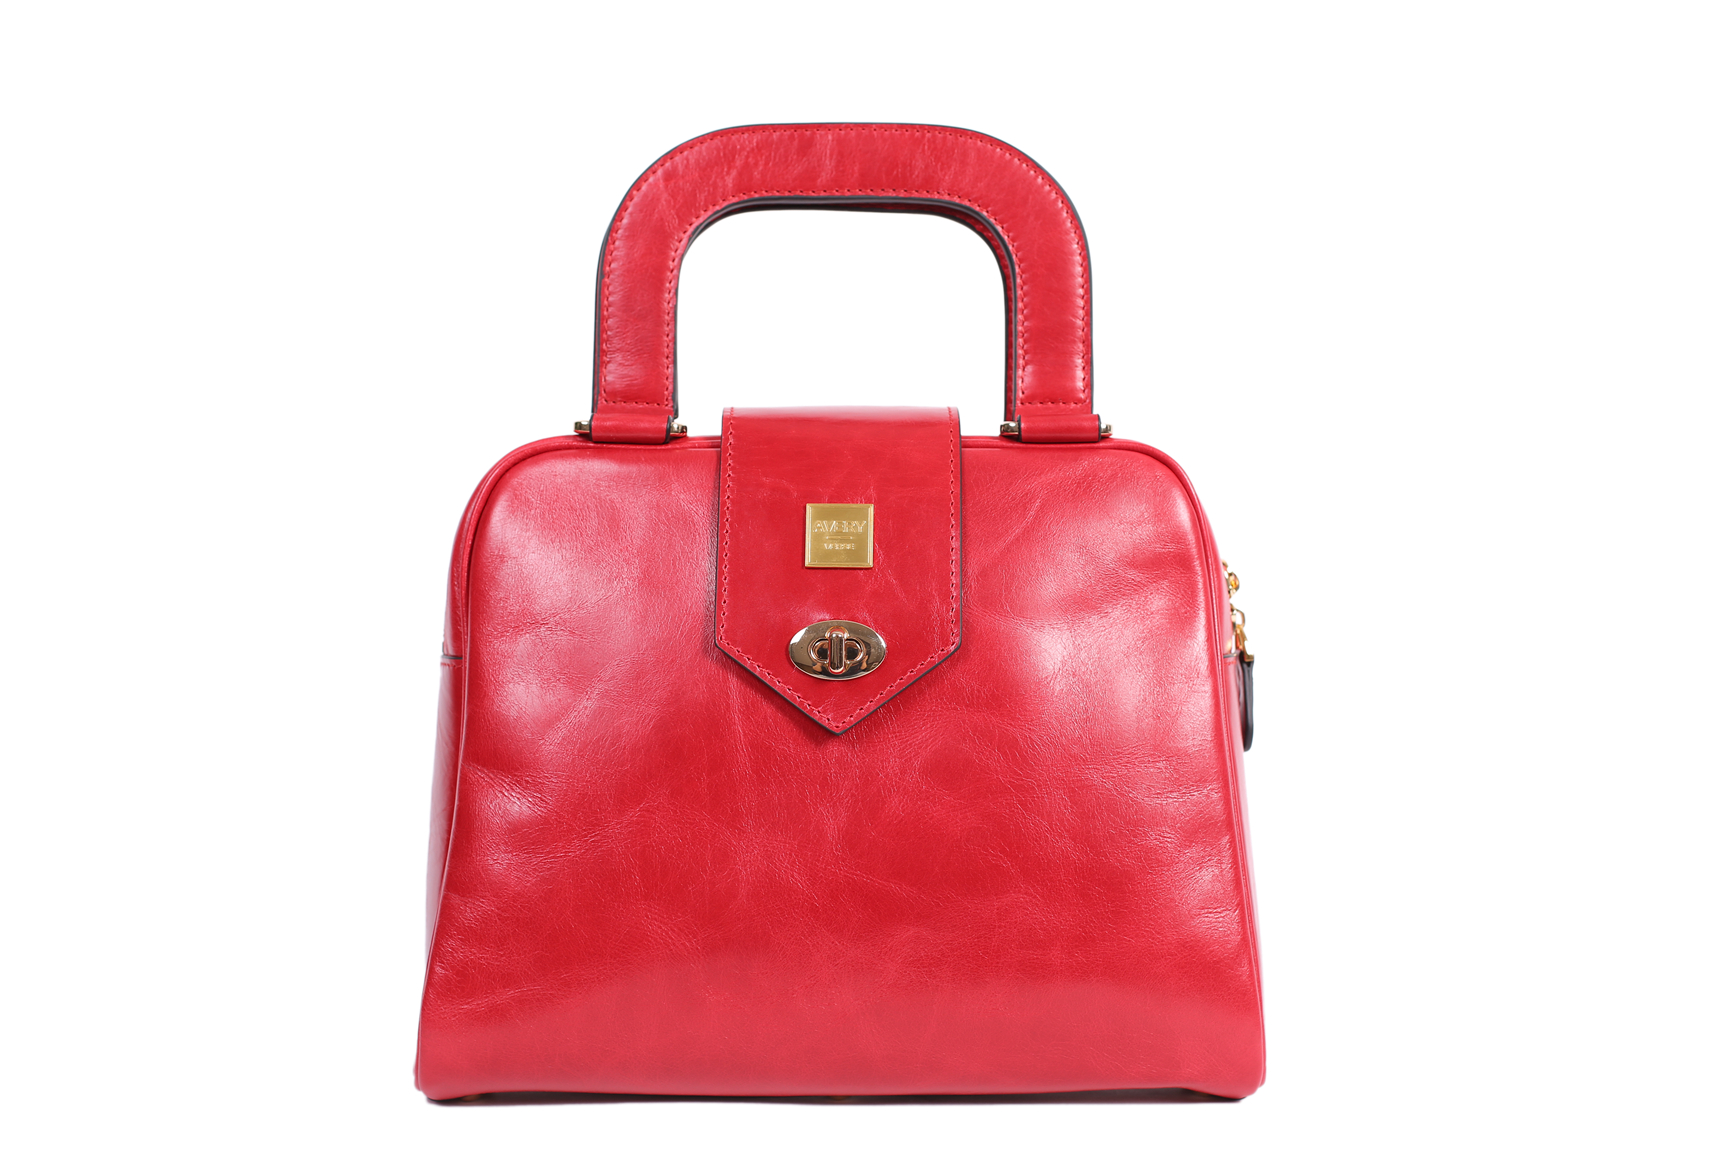 The Ballad Handbag in Red